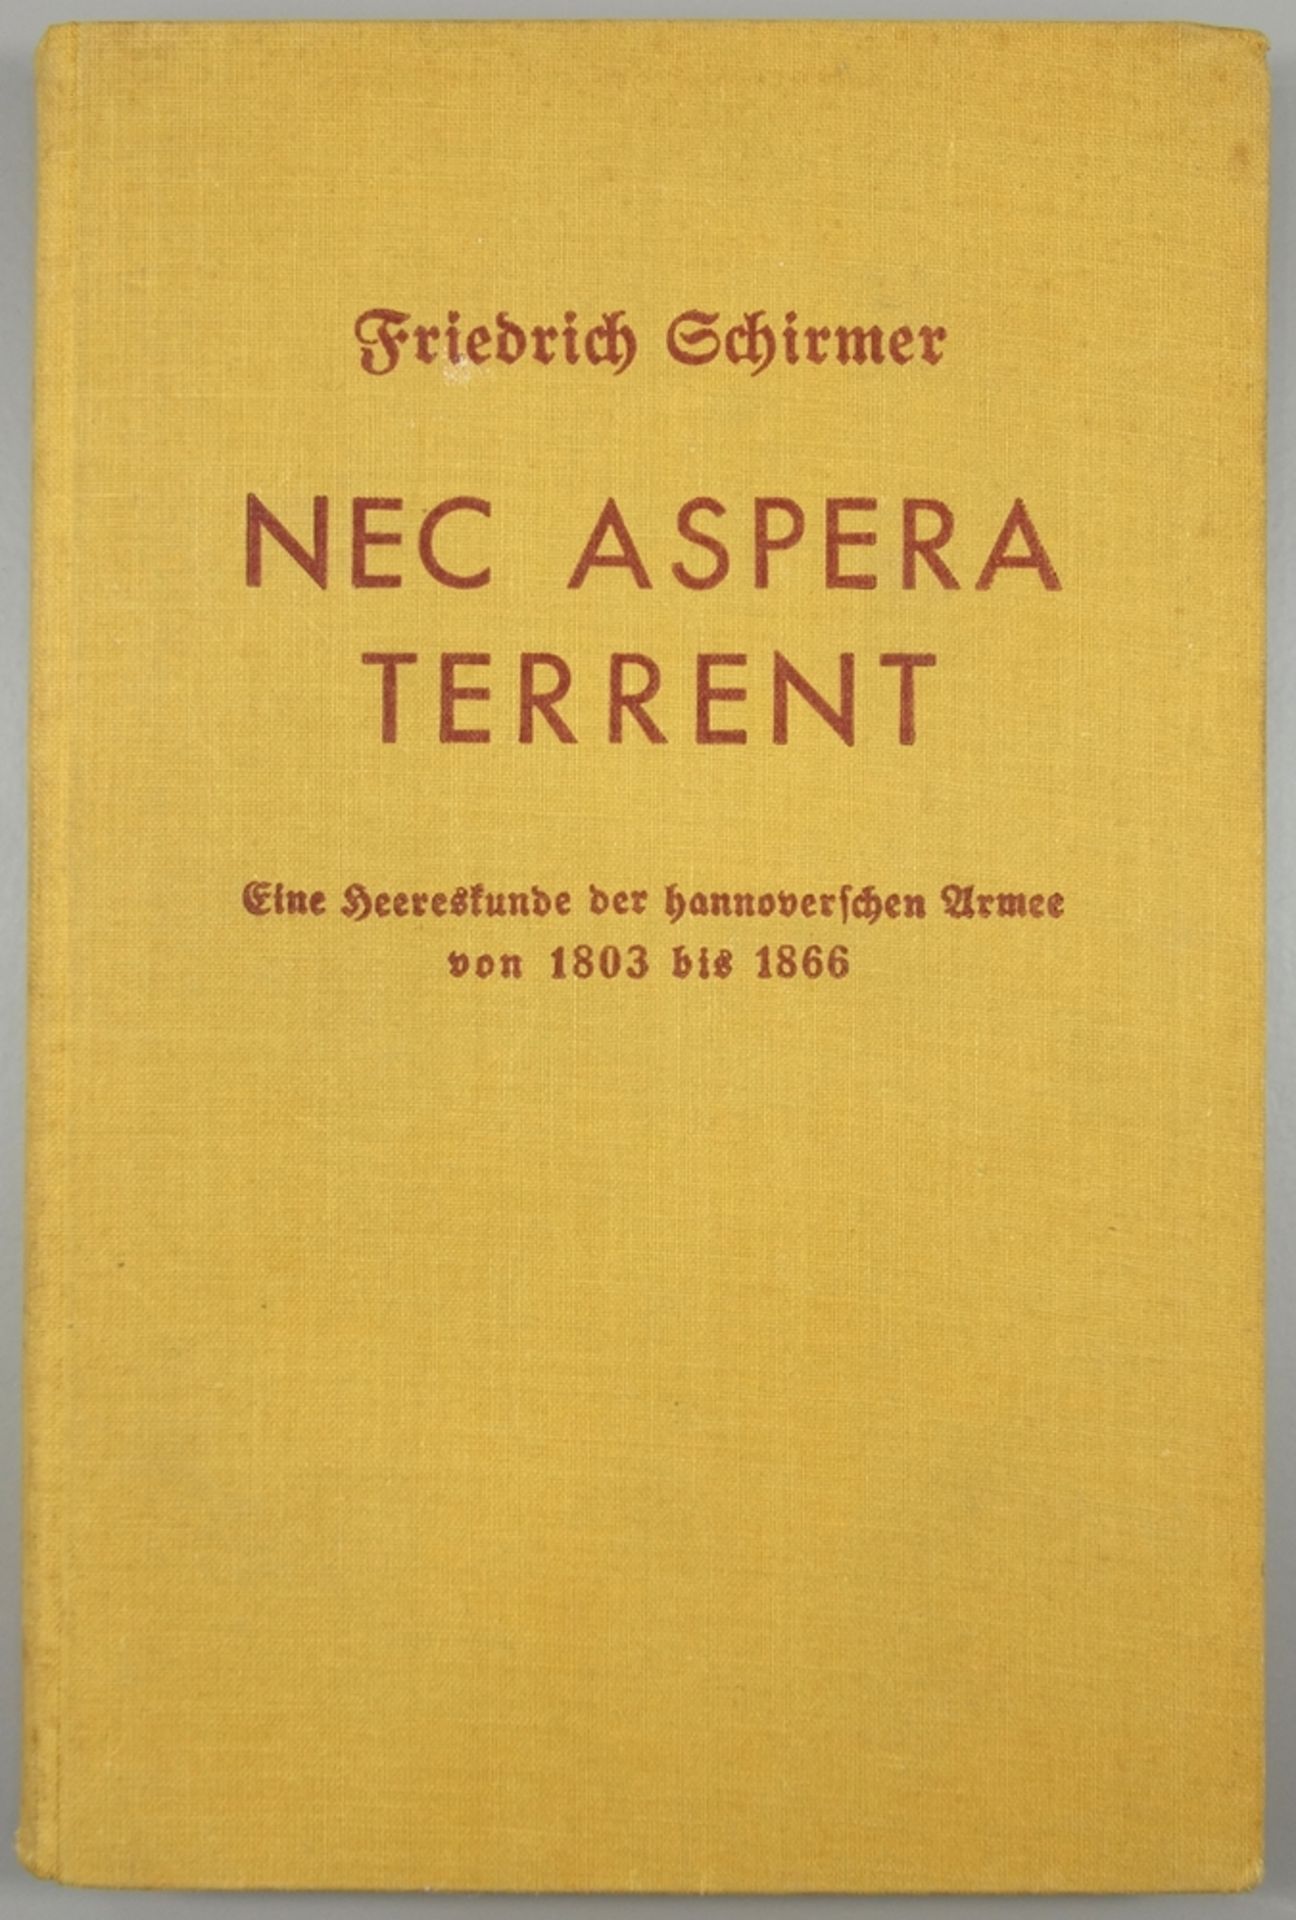 "Nec aspera terrent, Eine Heereskunde der hannoverschen Armee…" von Friedrich Schirmer, 1937, Band